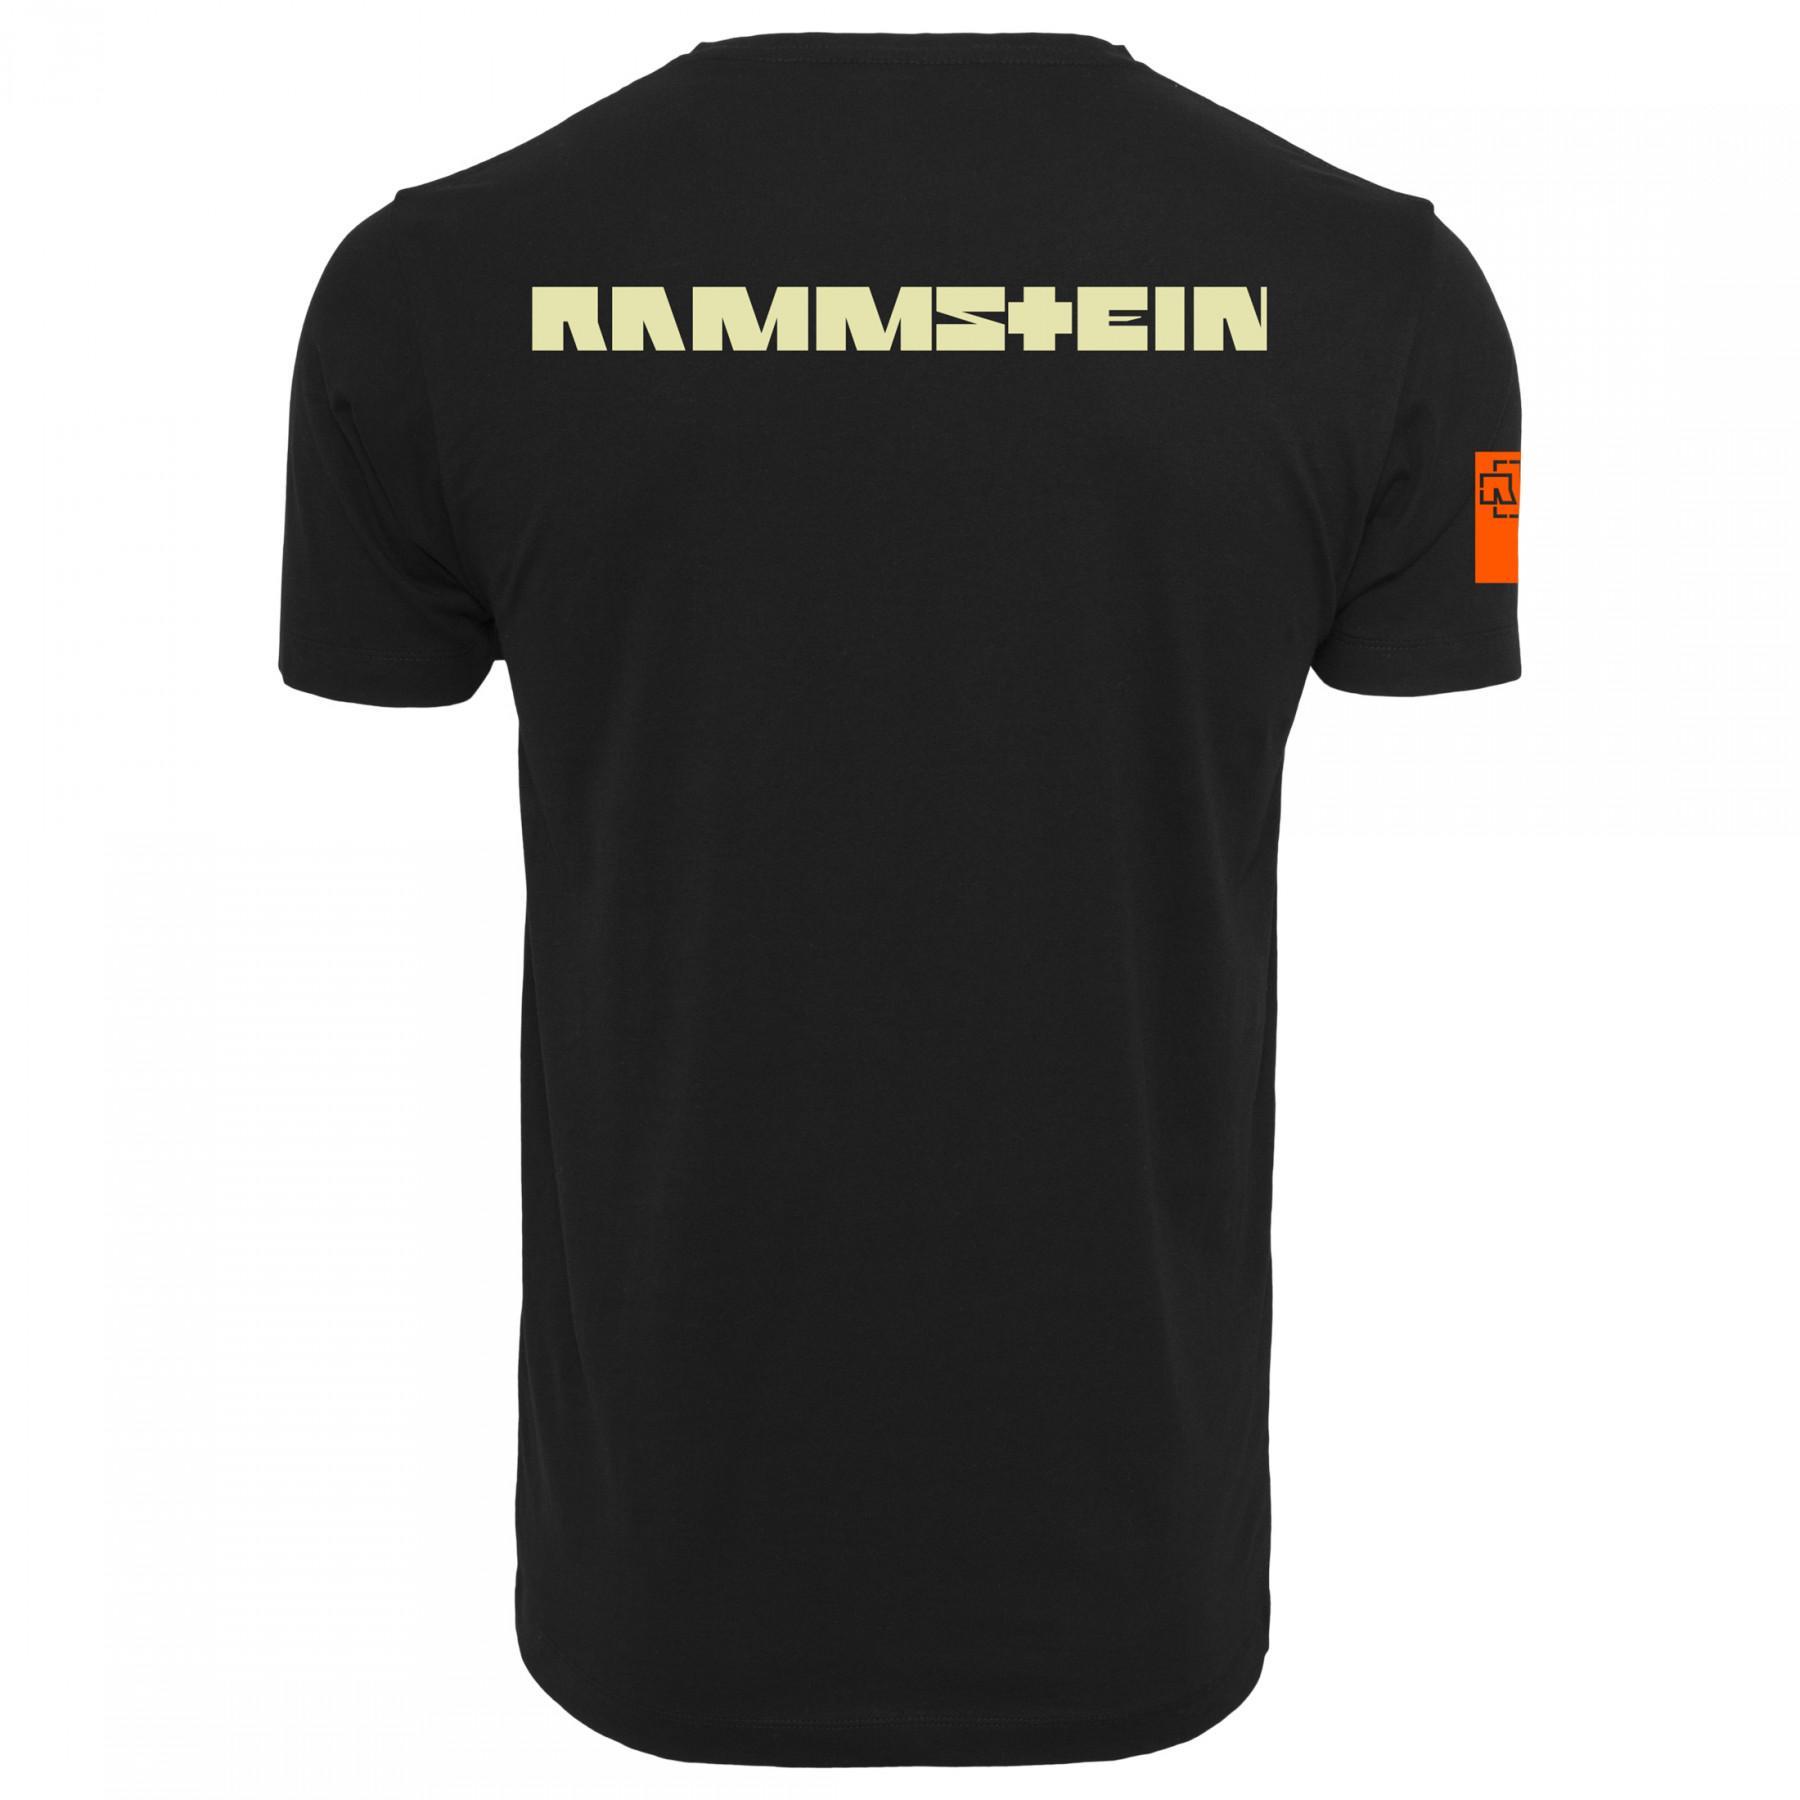 Koszulka Rammstein logo